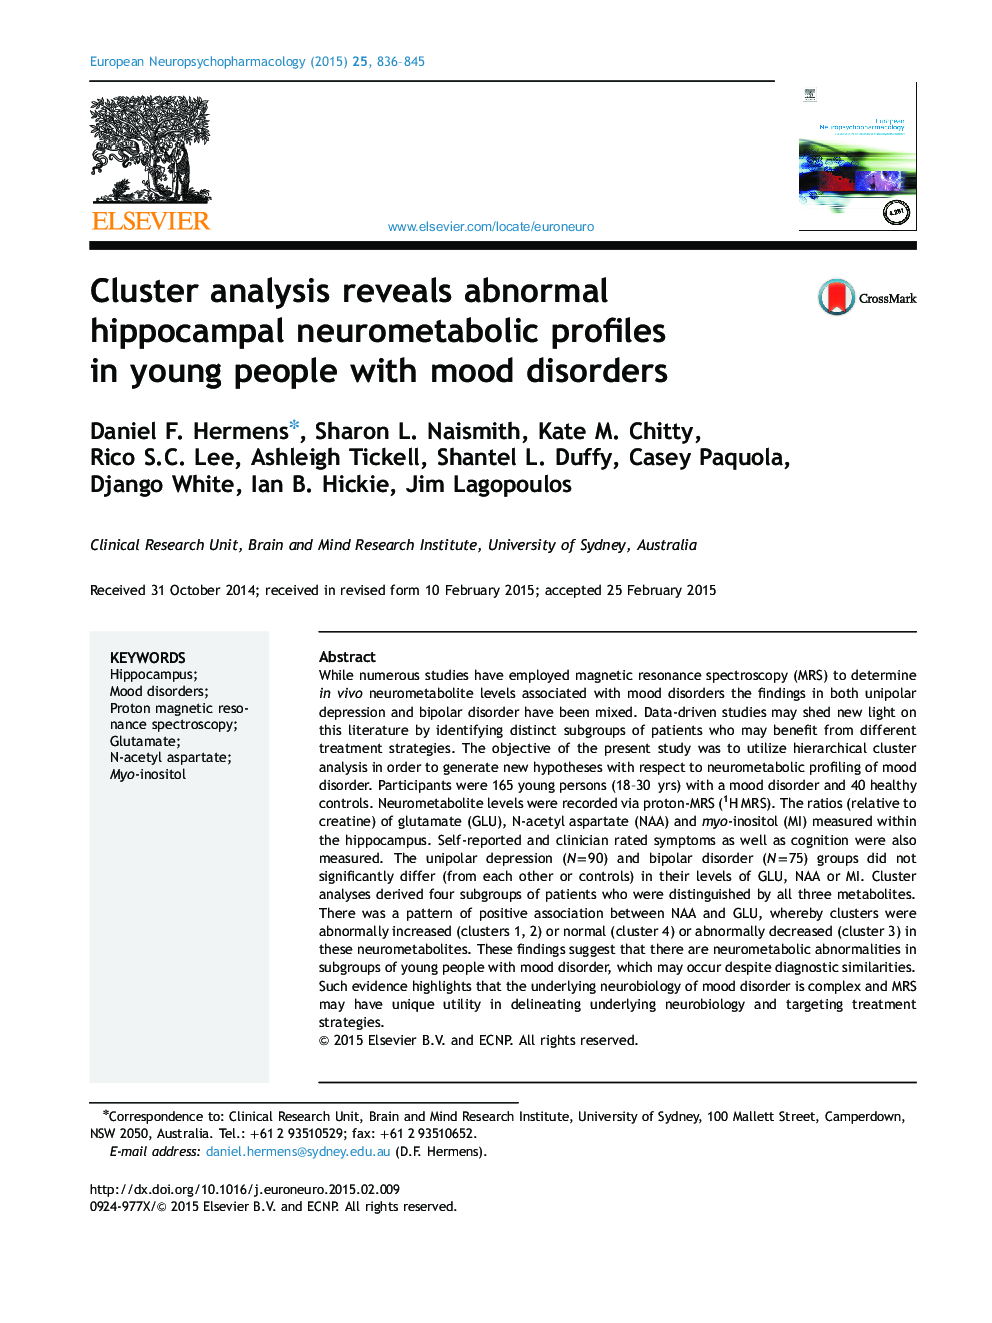 تجزیه و تحلیل خوشه ای نشان می دهد پروفیل های نوروماتوبولیک هیپوکامپ غیر طبیعی در جوانان مبتلا به اختلالات خلقی 